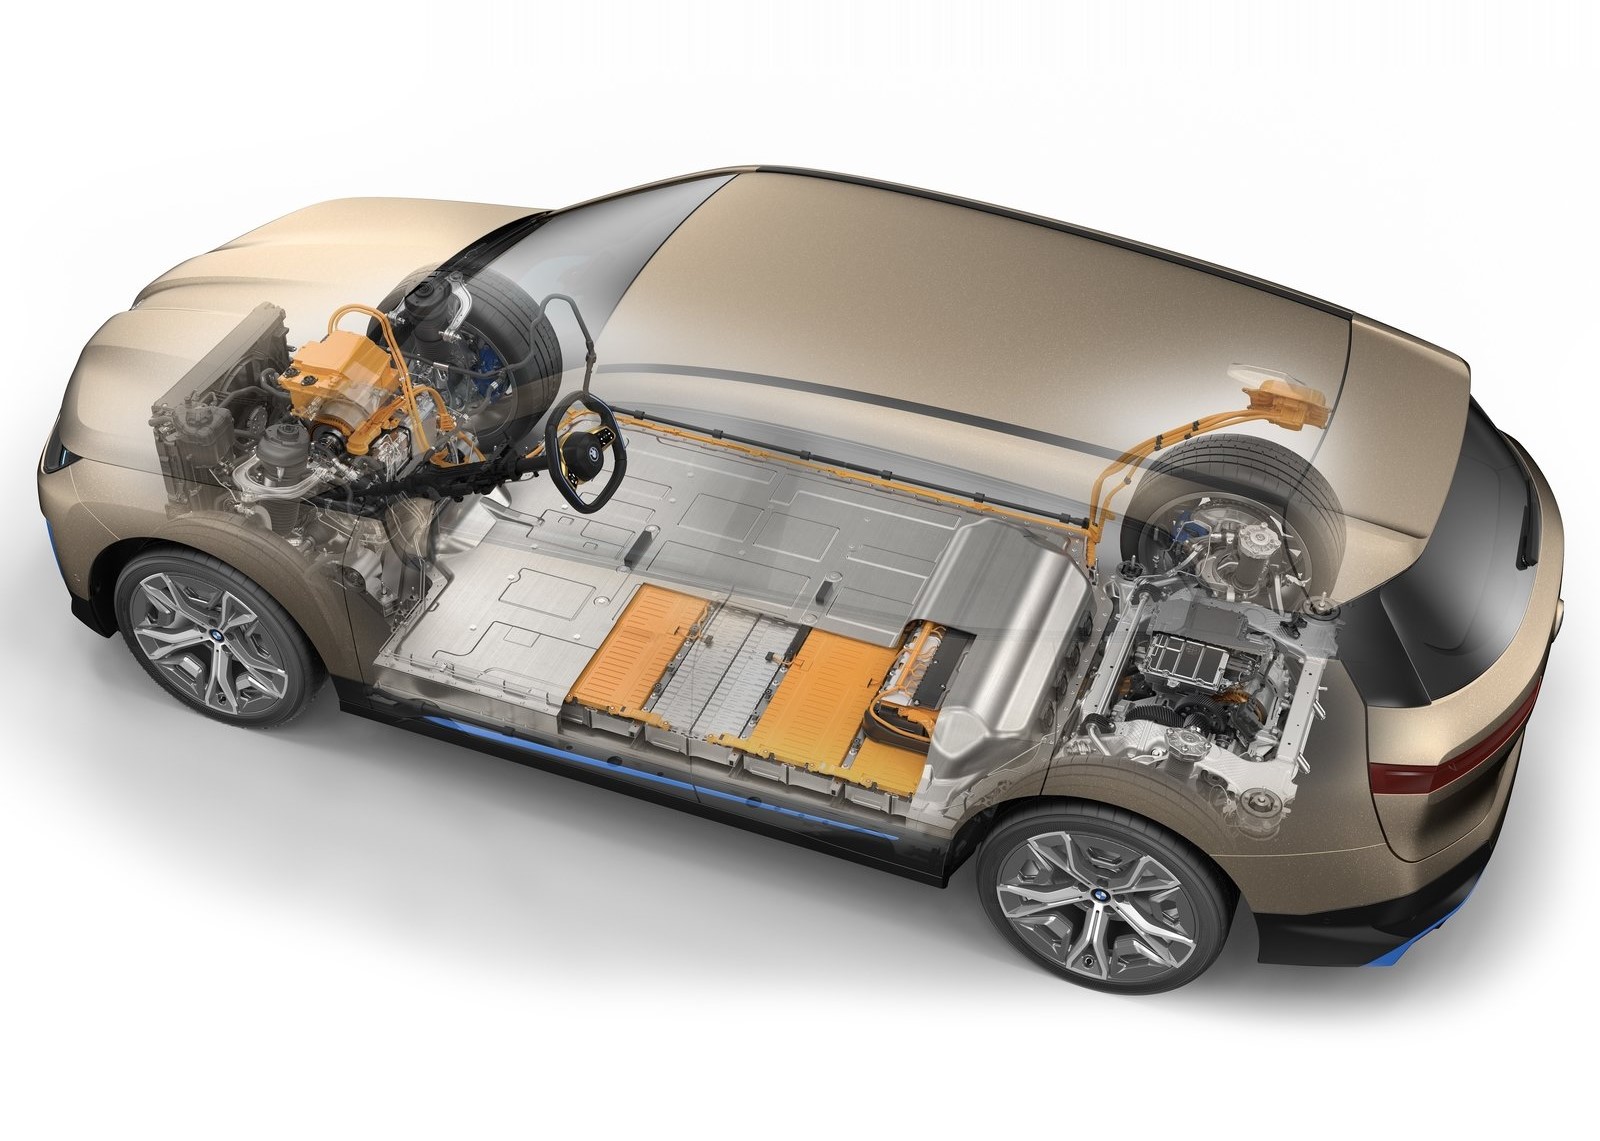 電動車的電池組均擺在車底，通常為多件組成的鋰電池組，造價高昂，務必注意電池情況。